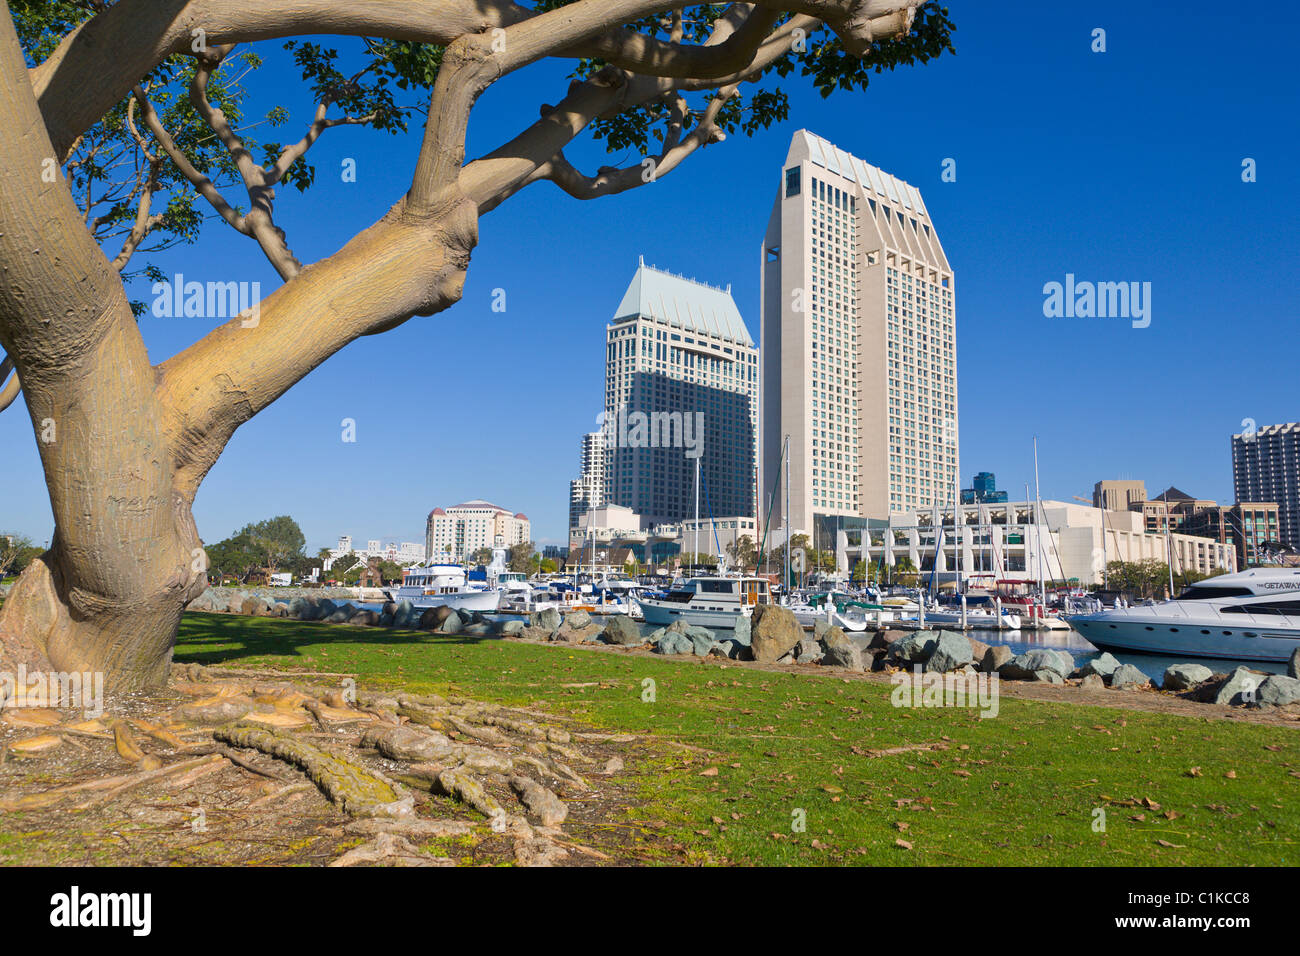 Seaport Village, San Diego, California, USA Stock Photo